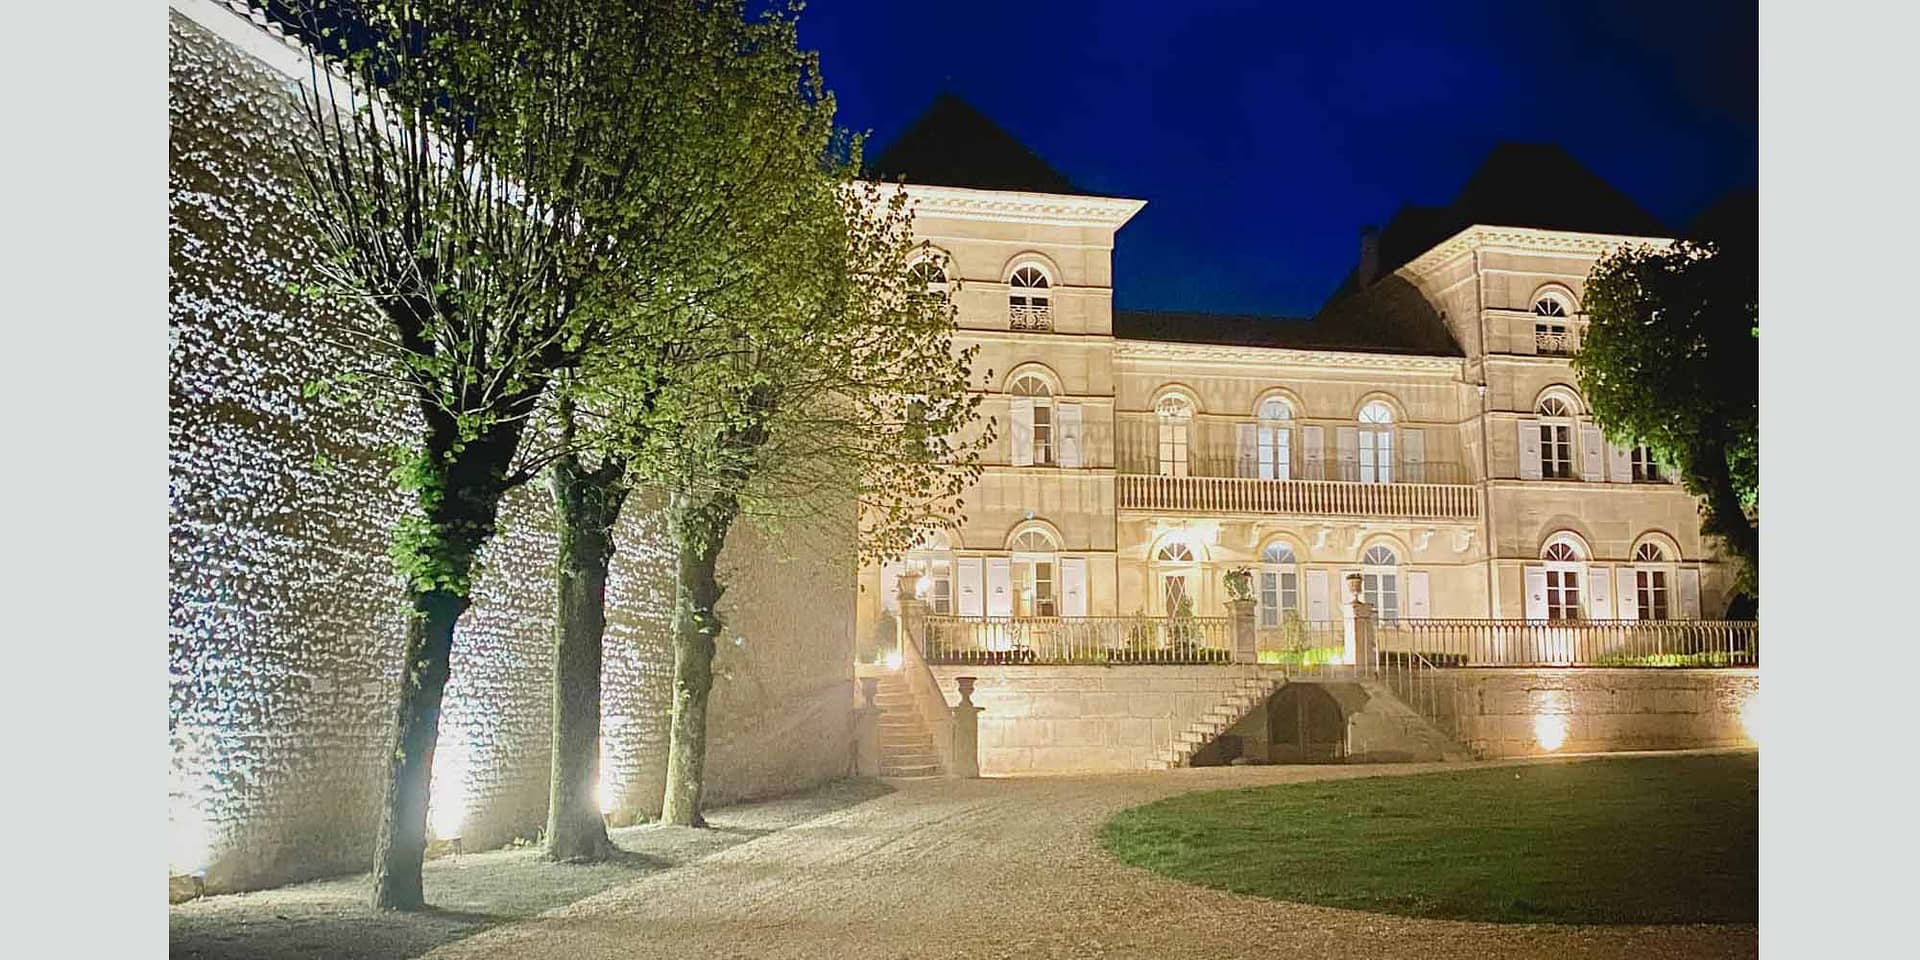 Chateau french wedding venue